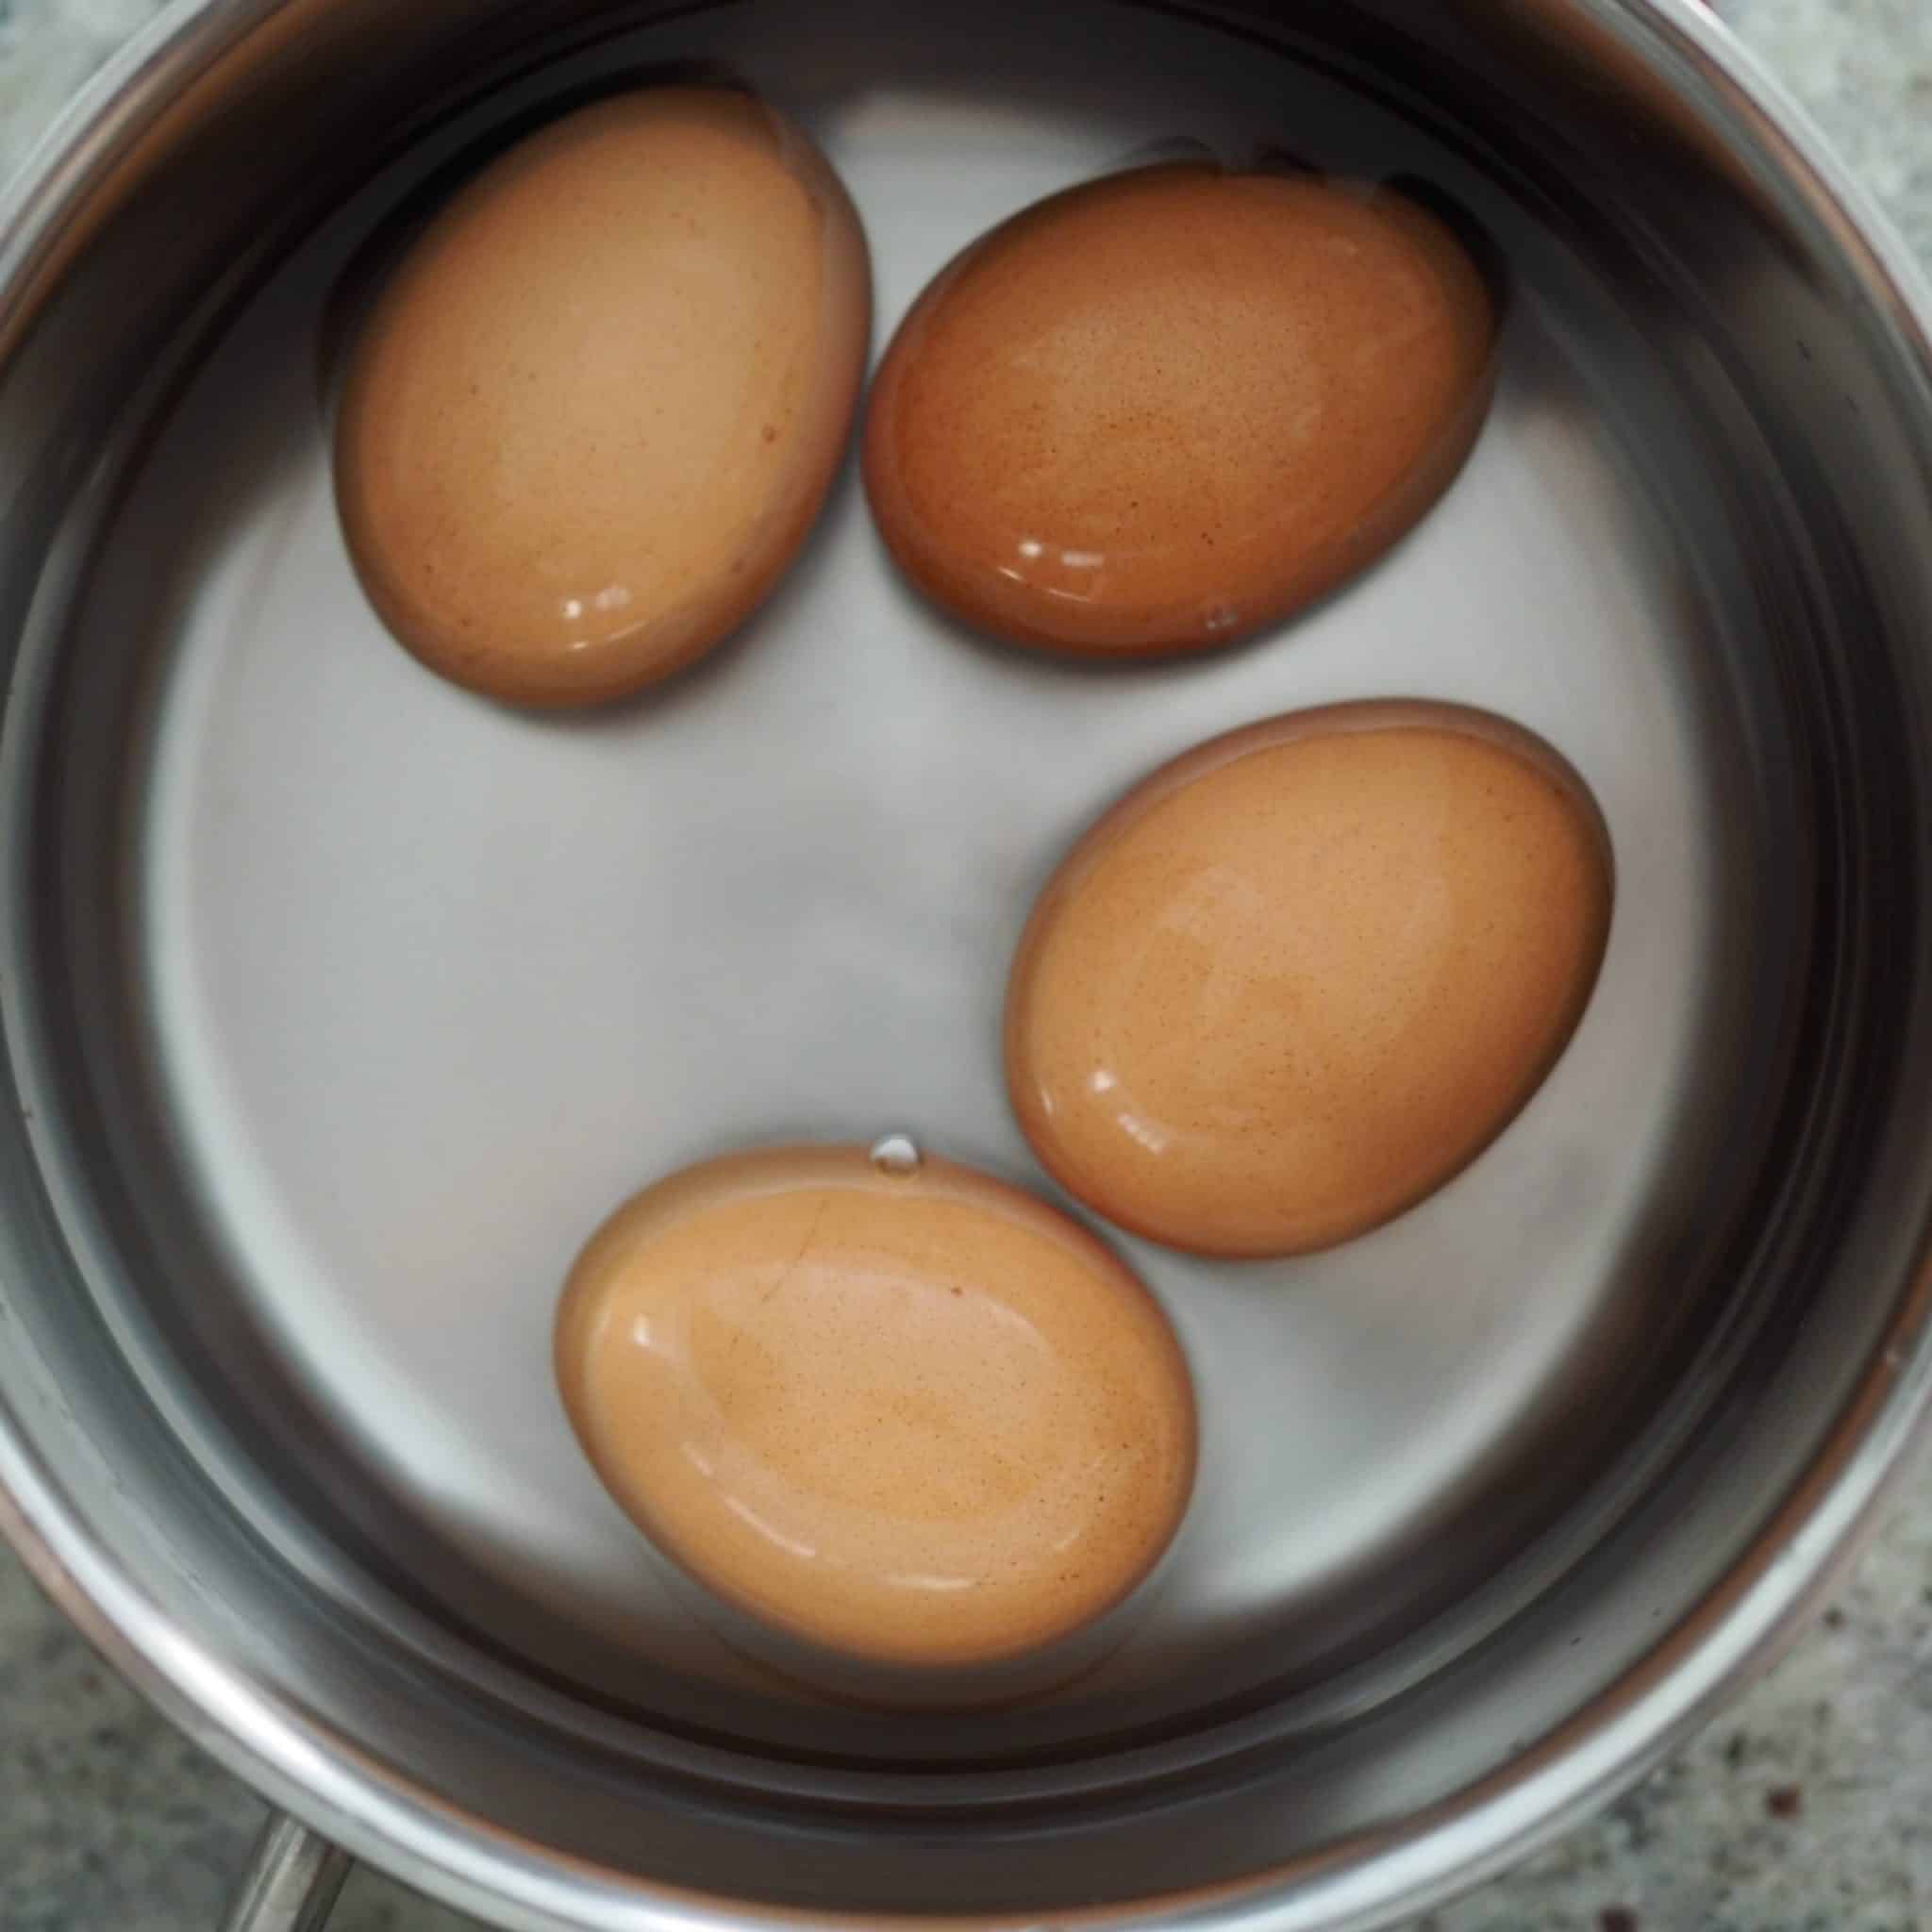 Bring Eggs to Room Temperature